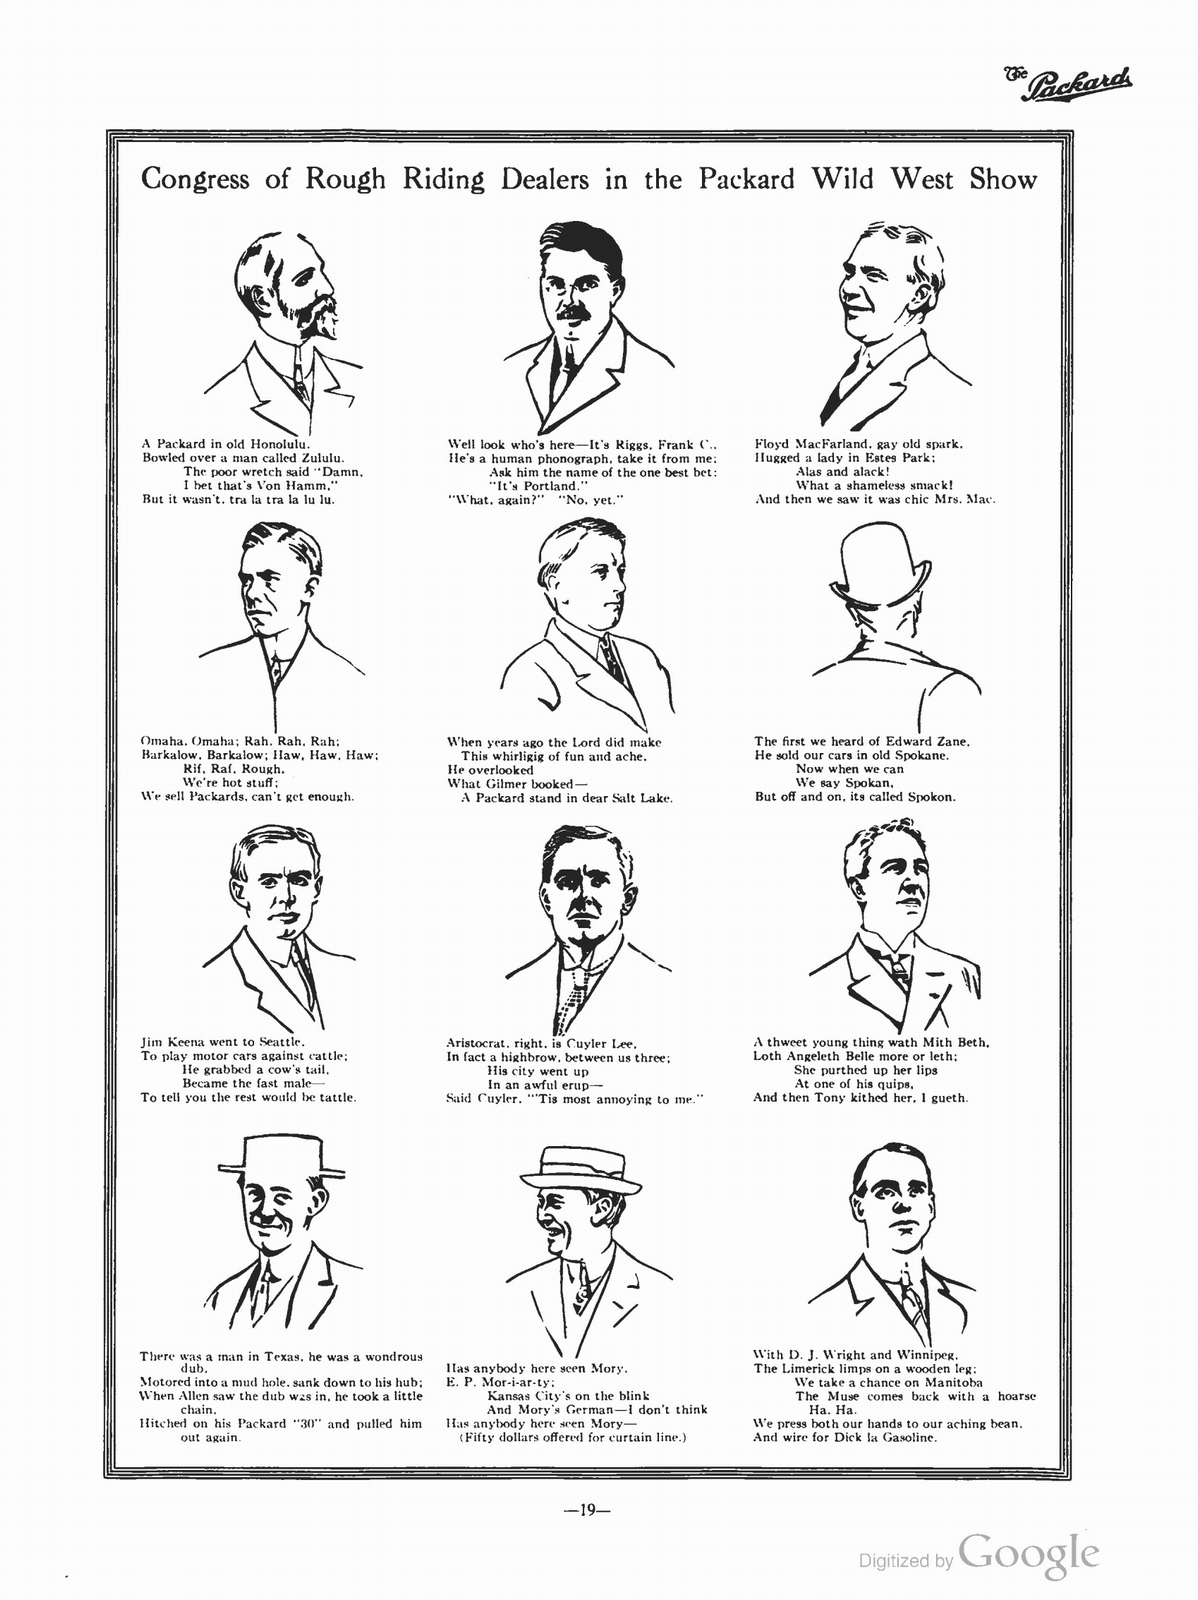 n_1911 'The Packard' Newsletter-105.jpg